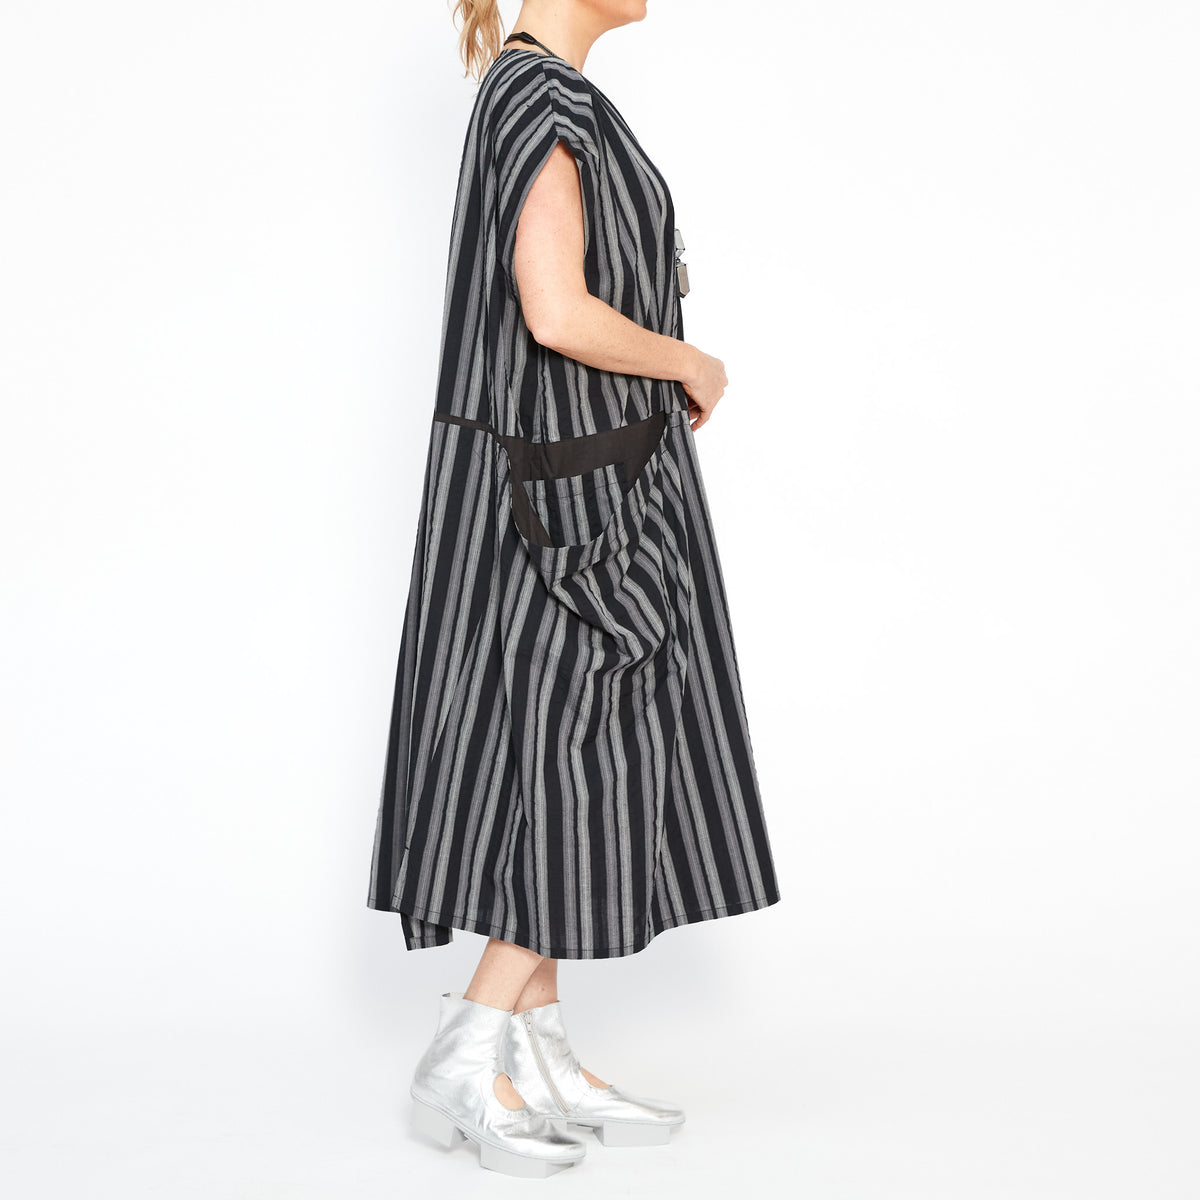 MU241607 Stripe Black Dress